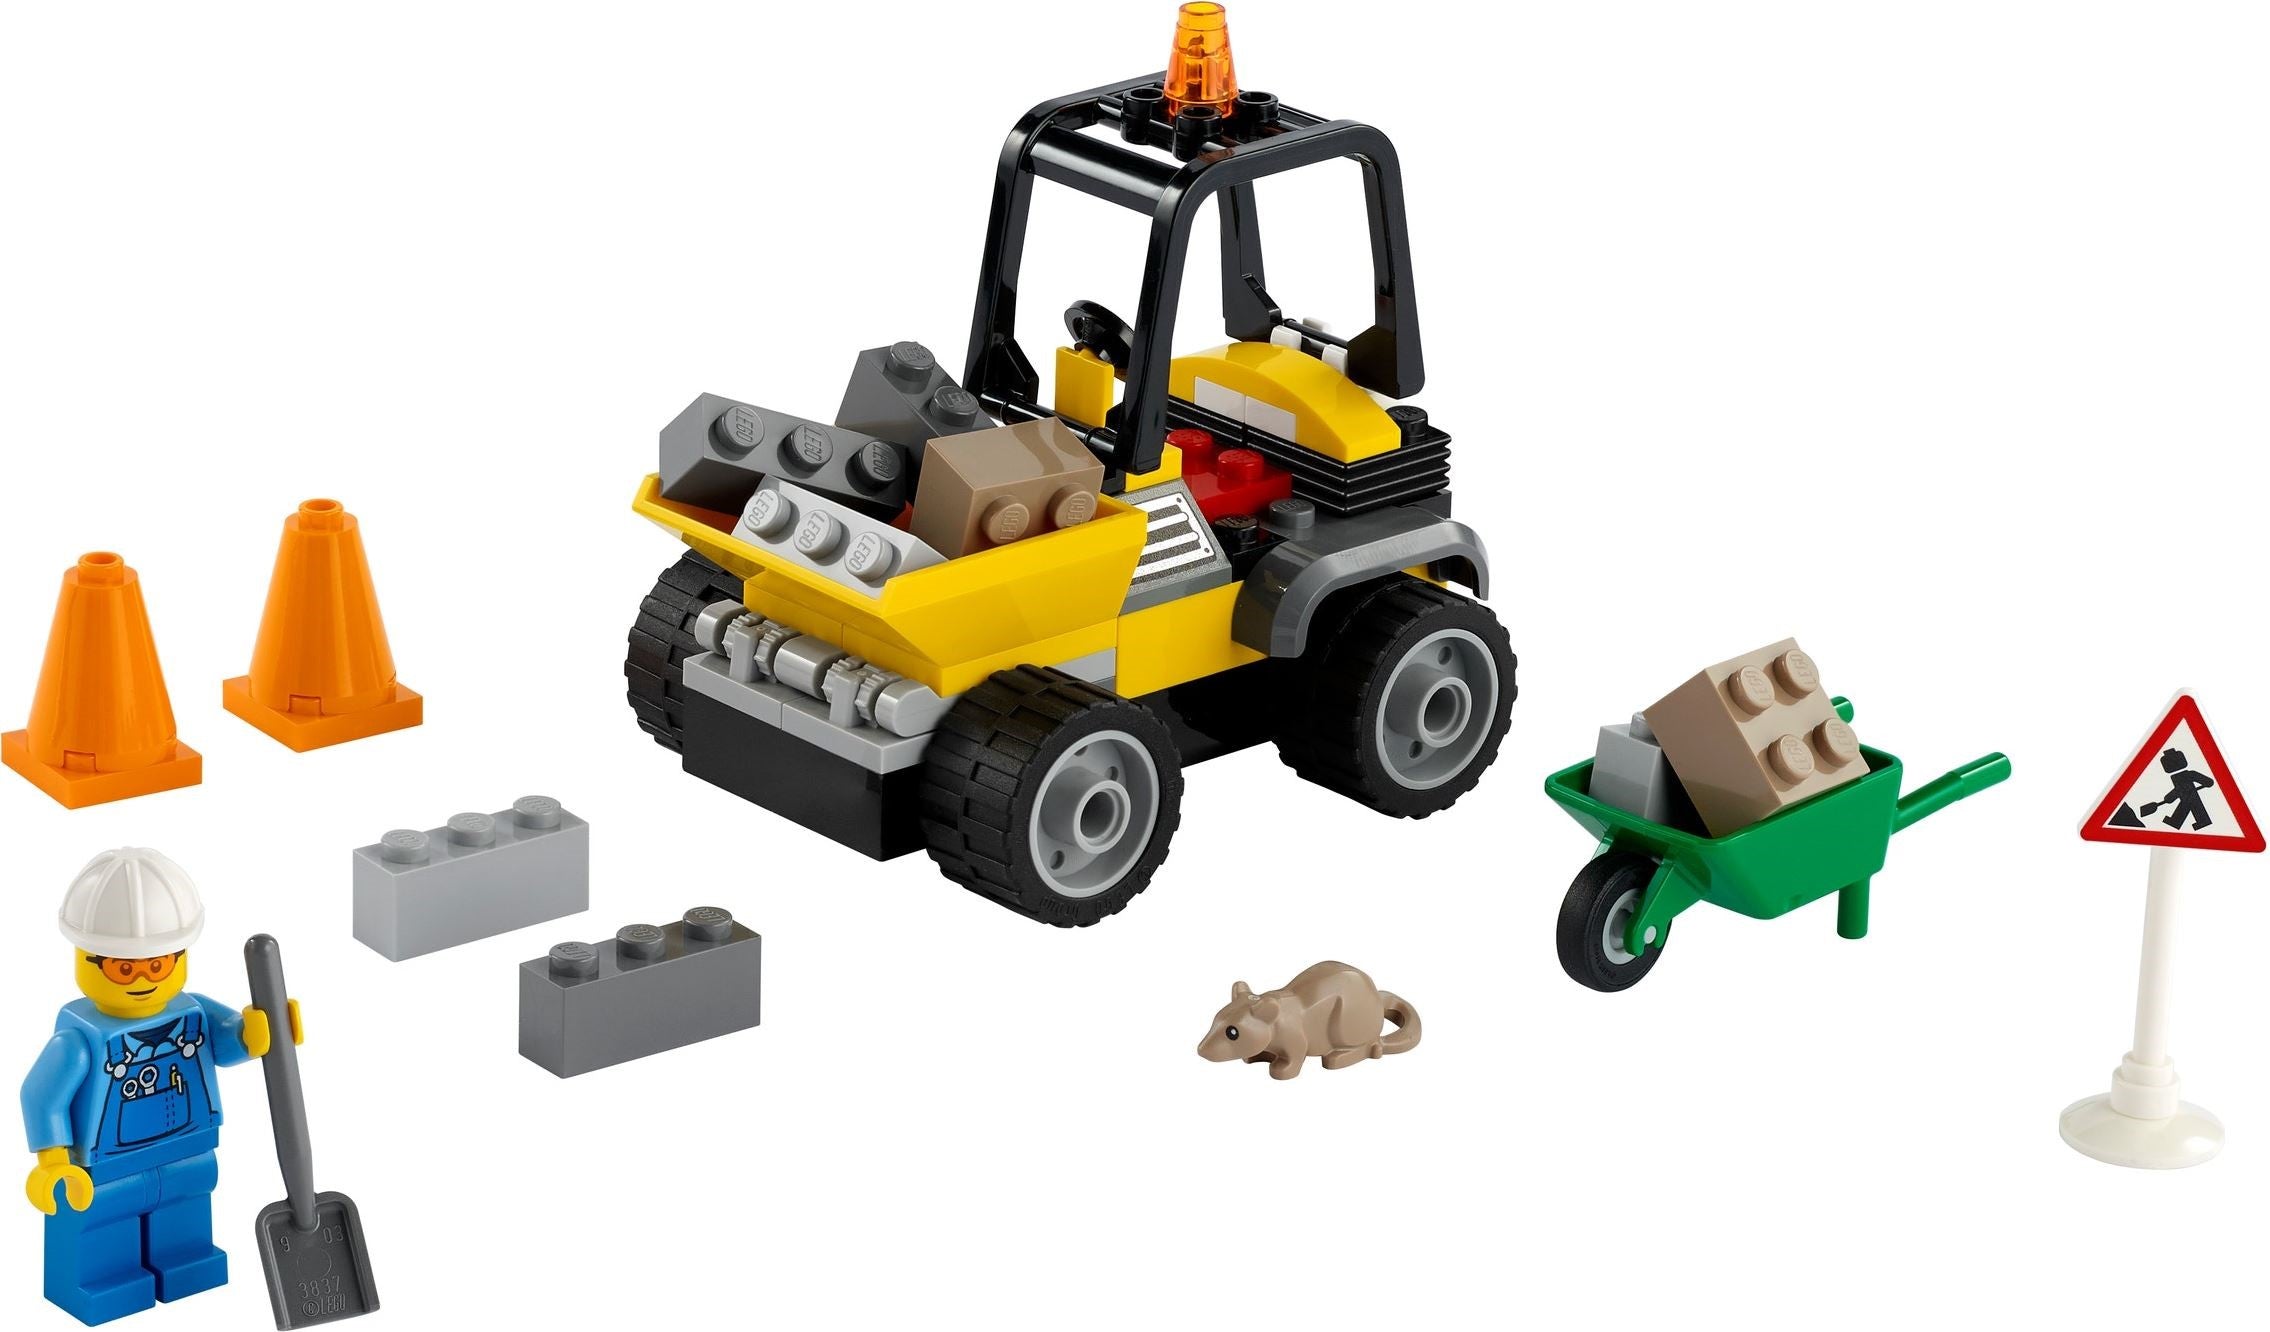 LEGO 60284 Roadwork Truck